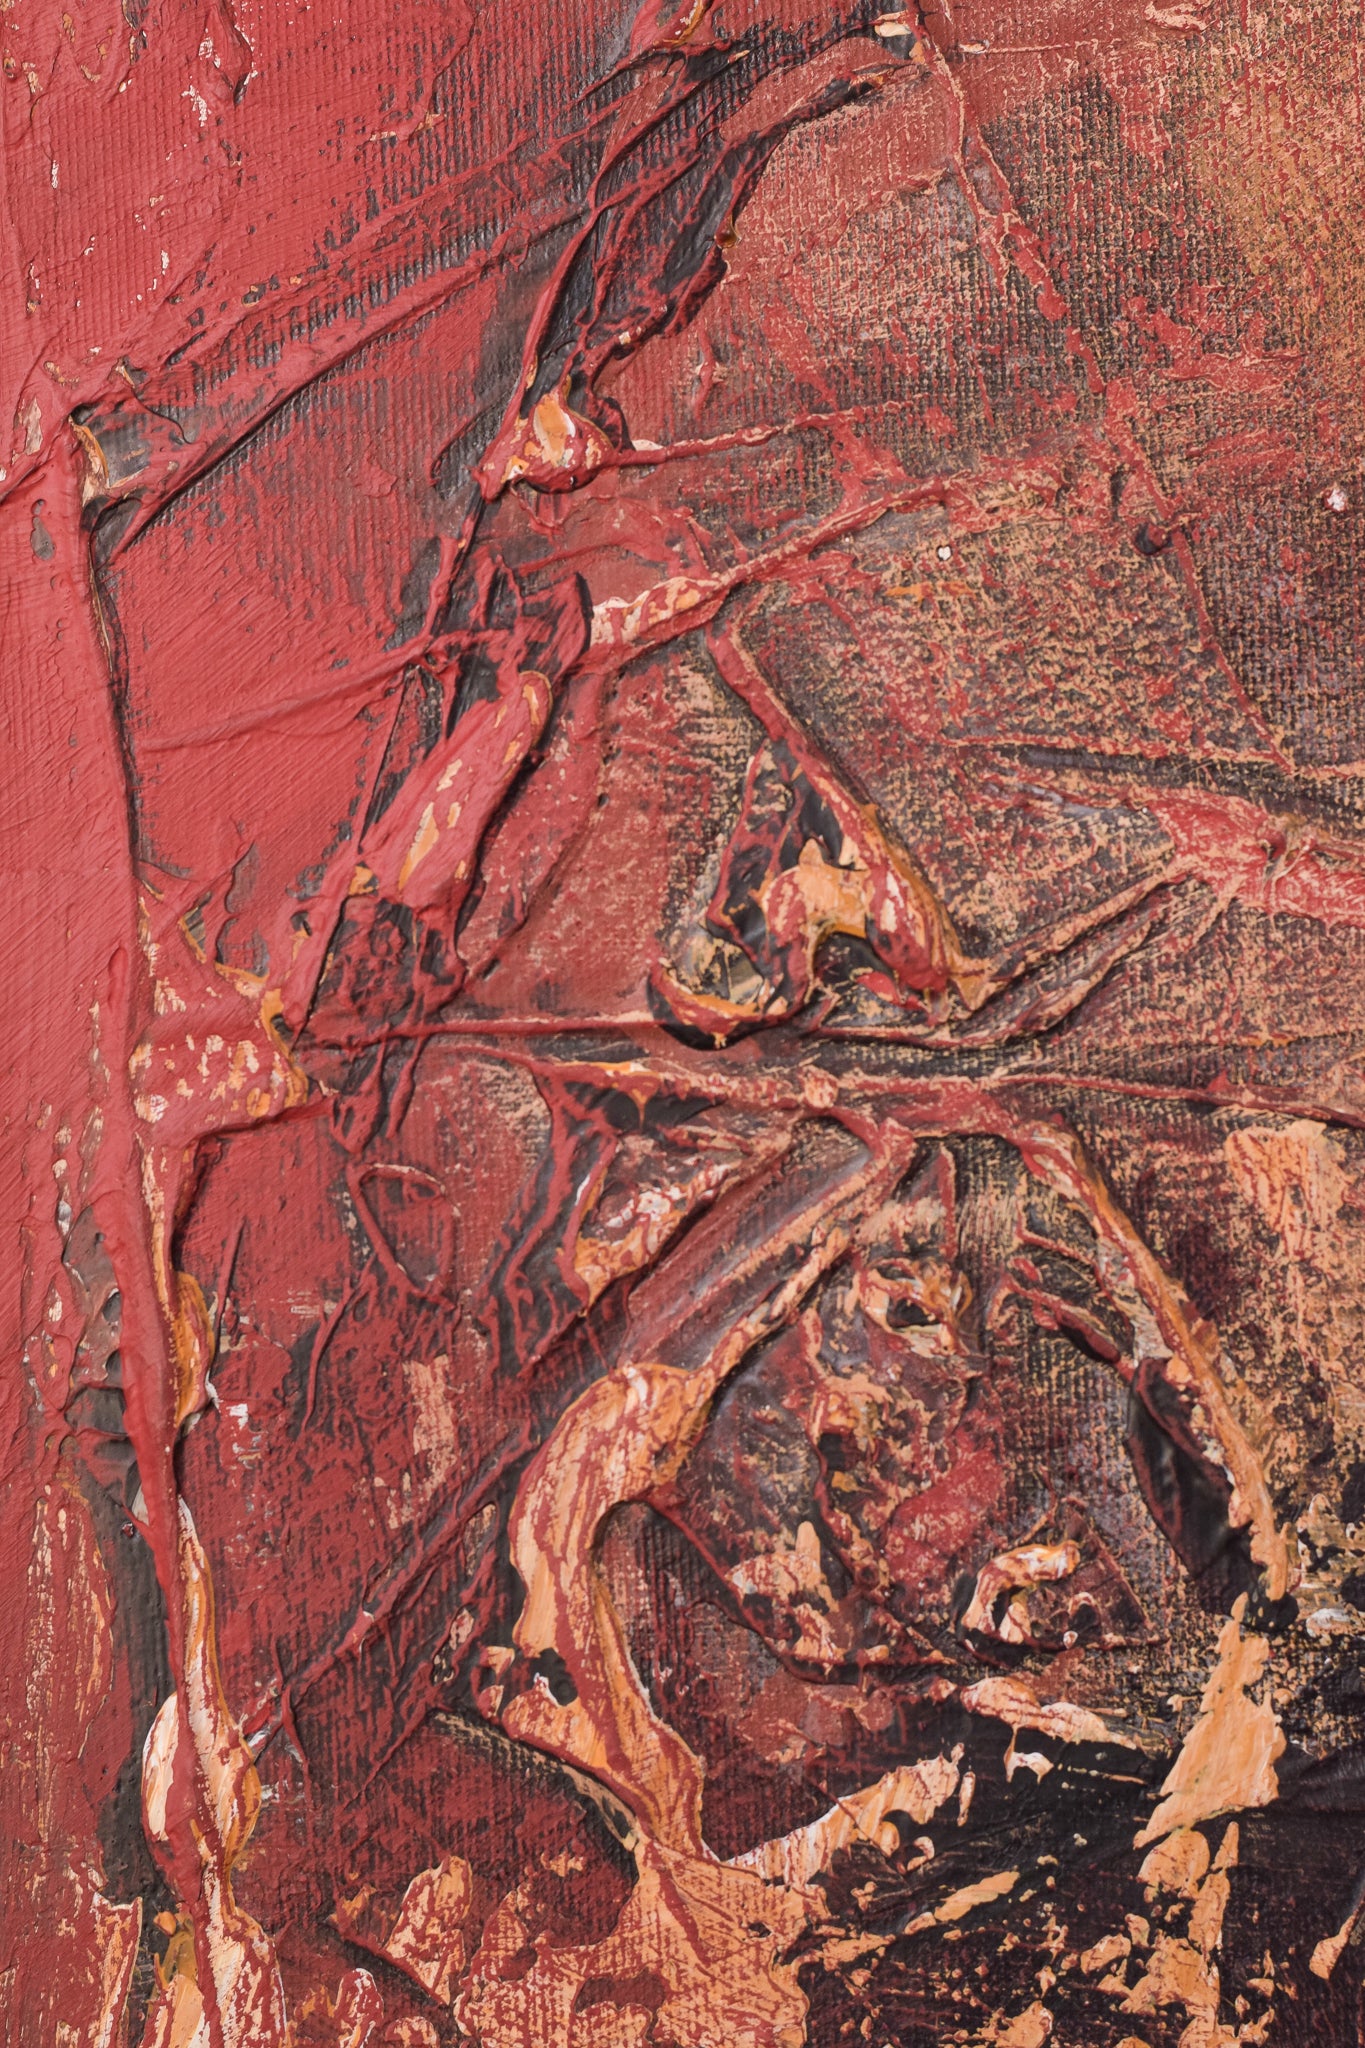 Pintura abstracta titulada 'Anatomía dispersa'